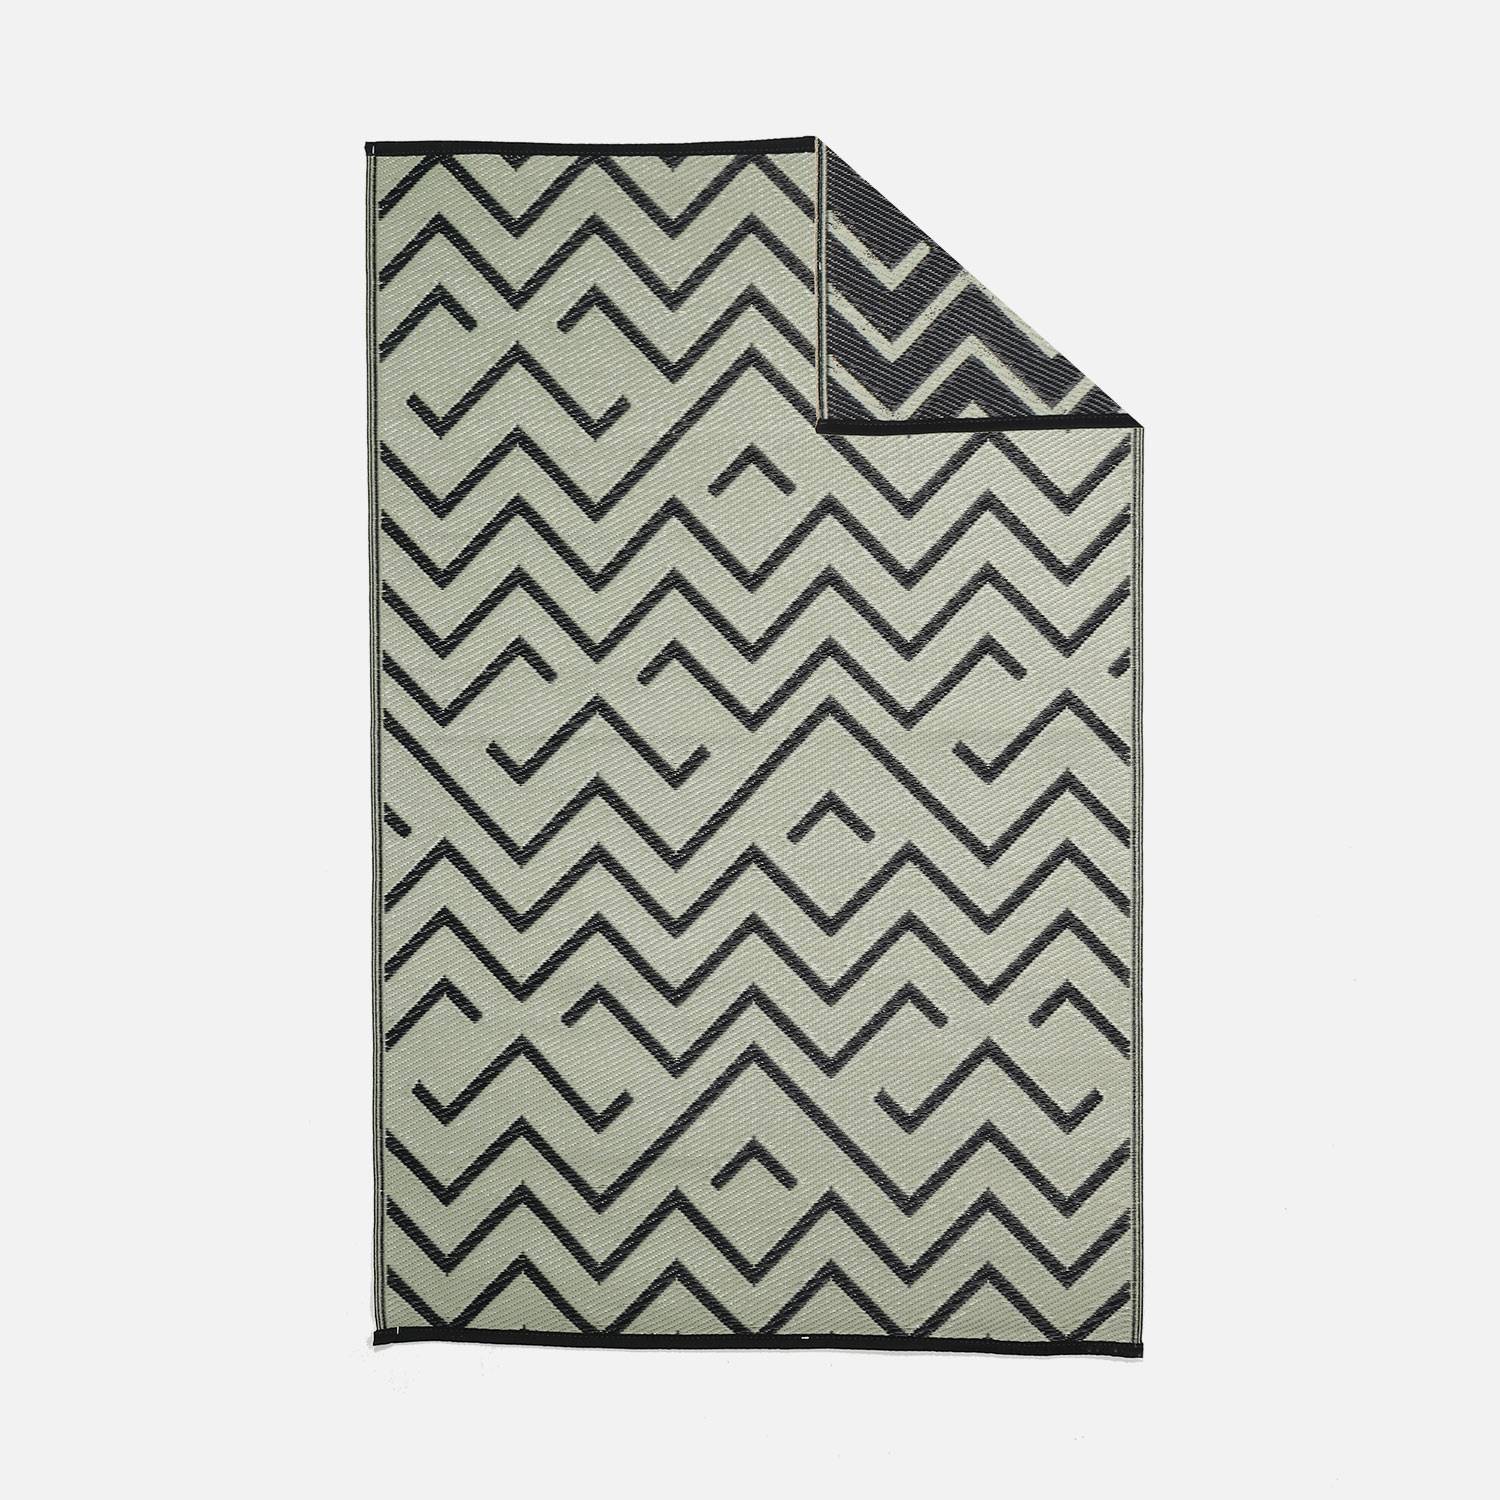 Tapis d’extérieur 120x180cm SYDNEY - Rectangulaire, motif vagues noir / beige, jacquard, réversible, indoor / outdoor Photo1